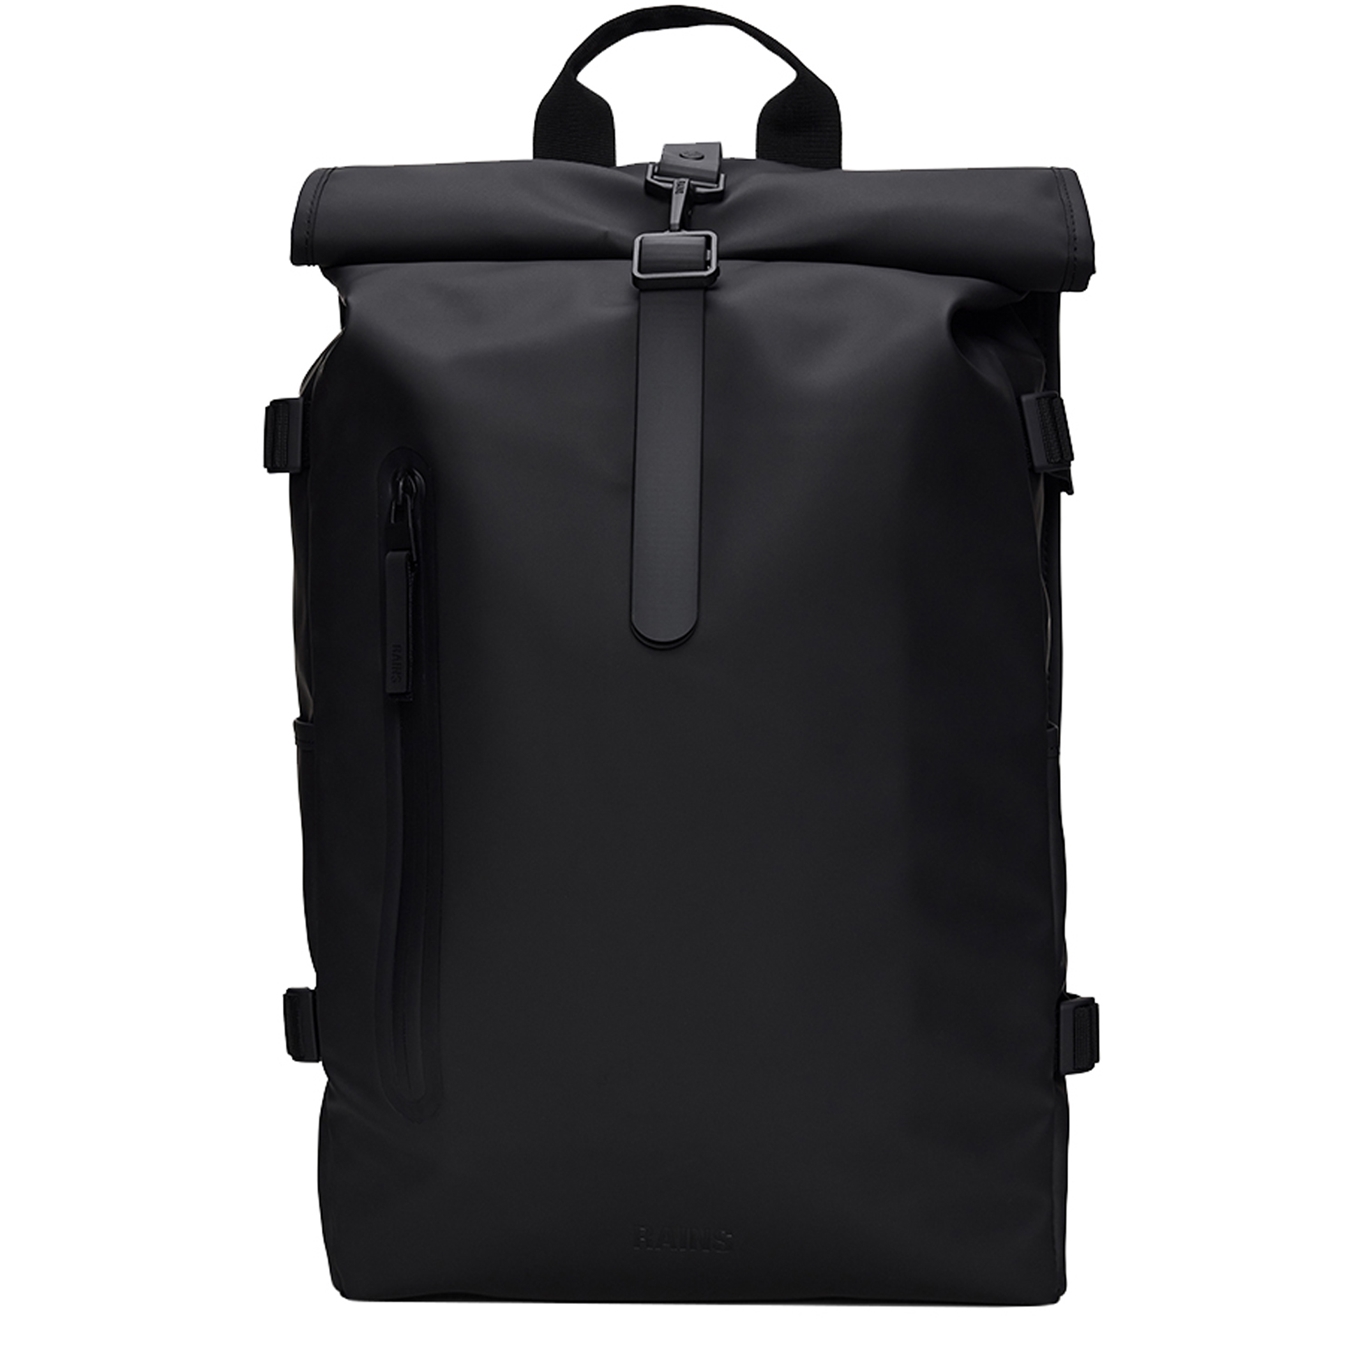 Rains Rolltop Rucksack Large W3 black backpack